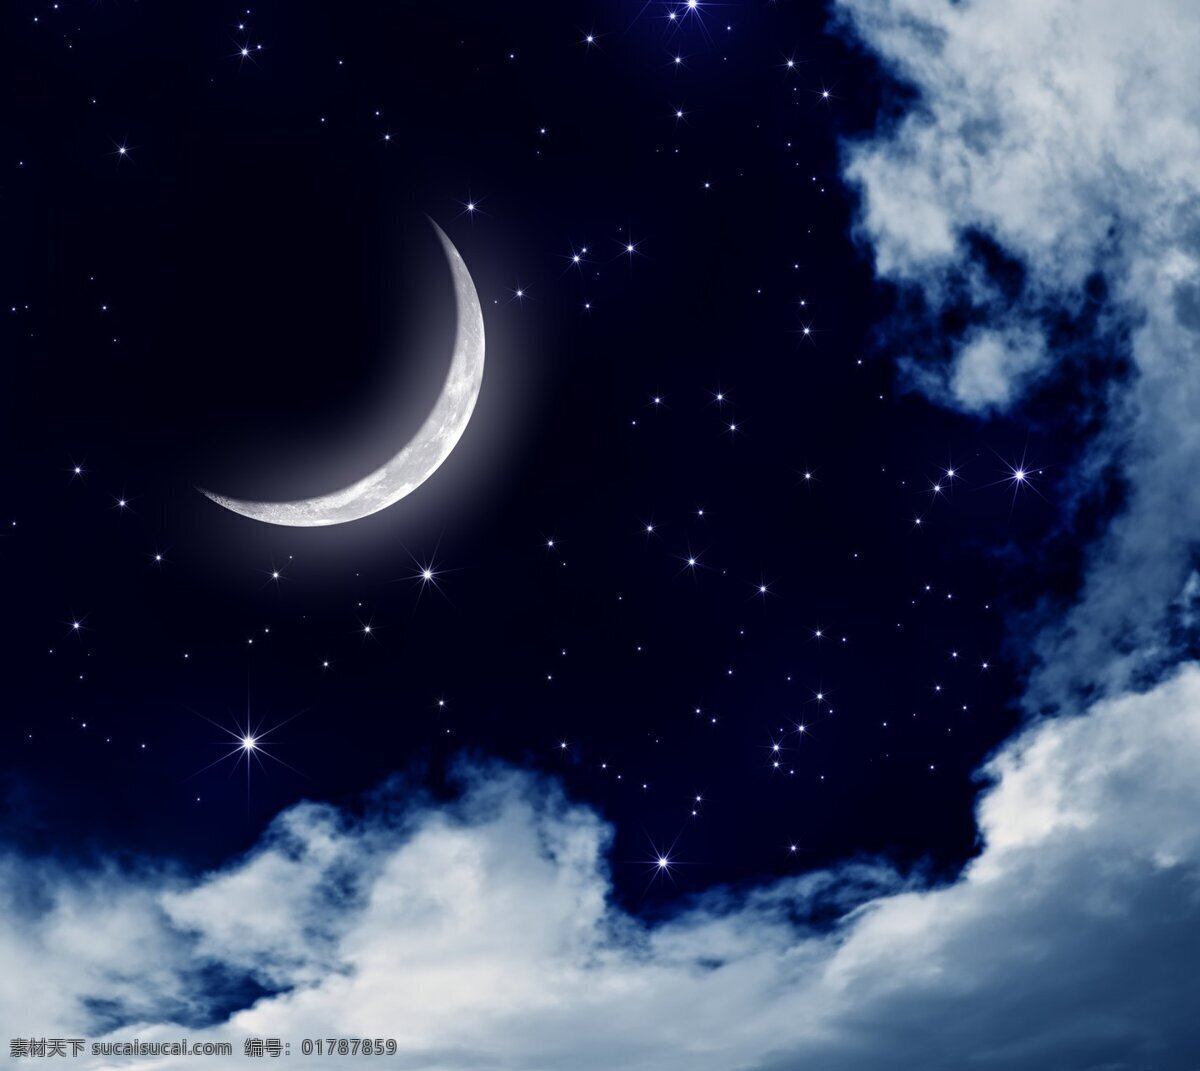 月夜 壁纸 风景 自然 月亮 弯月 星空 闪烁 云朵 共享 图 风景如画 自然景观 自然风光